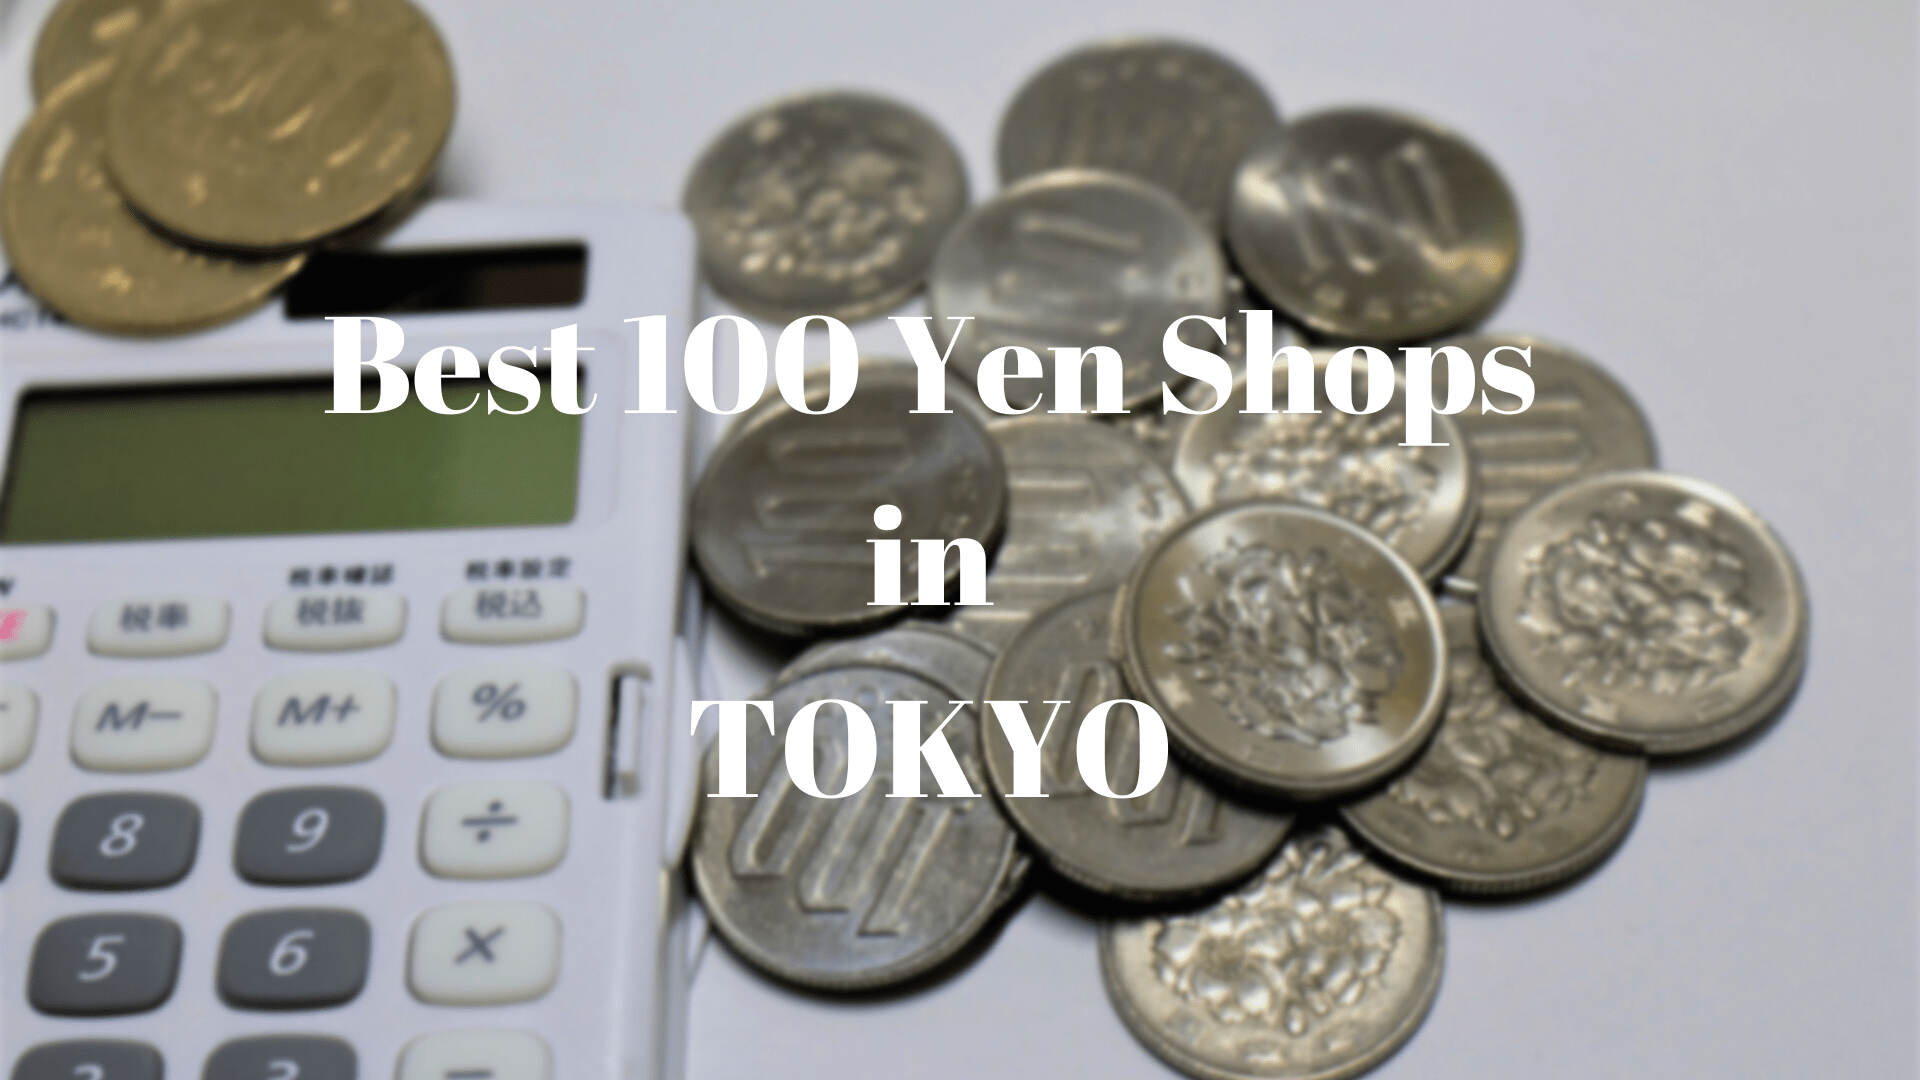 6 Best 100 Yen Shops in Tokyo